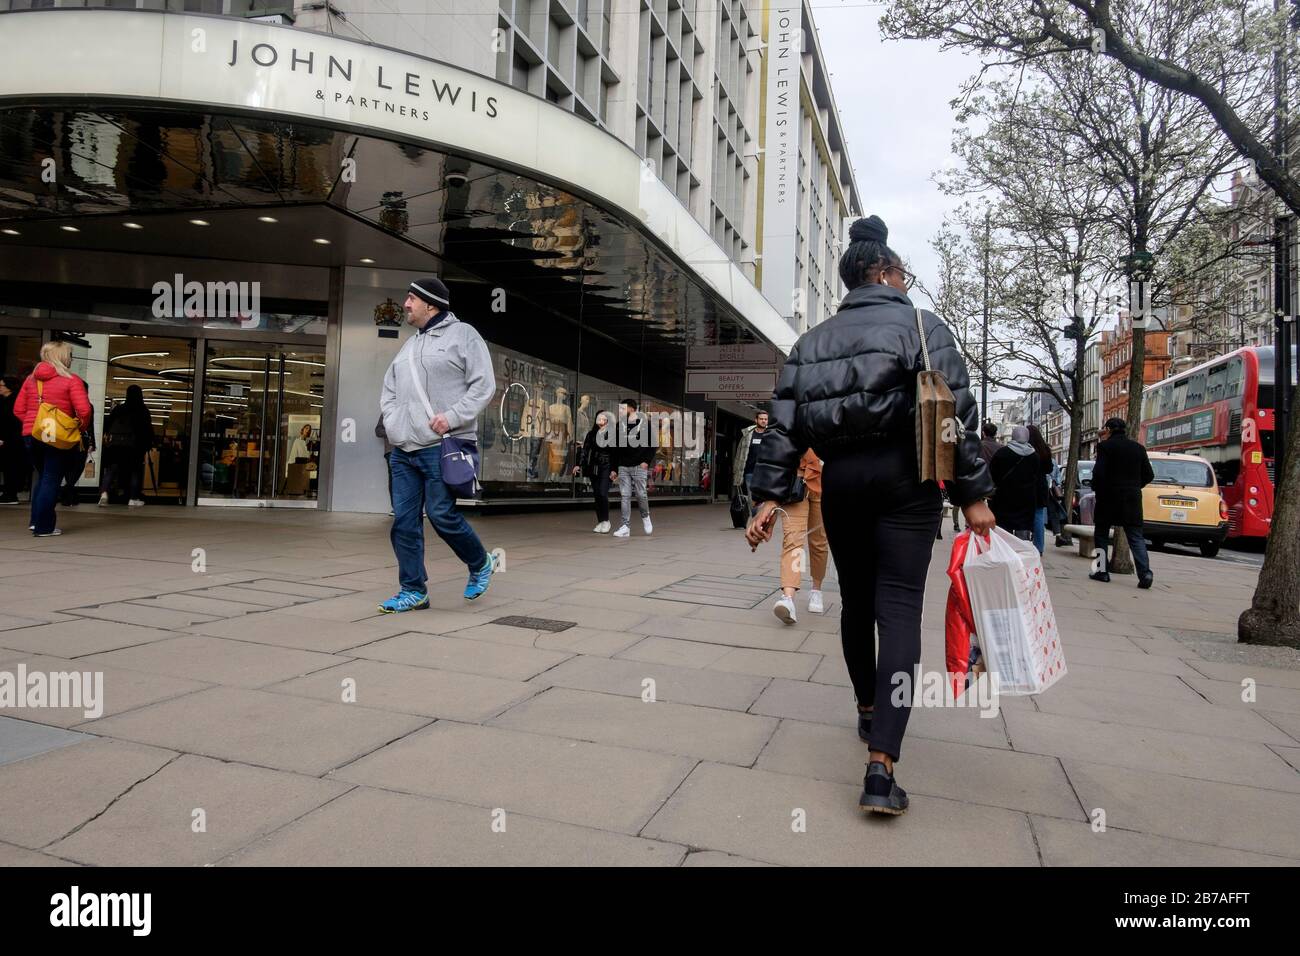 Londra, Regno Unito. 14 marzo 2020. Oxford Street nel West End di Londra attrae gli amanti dello shopping nonostante le preoccupazioni per la pandemia del virus Corona. Foto Stock